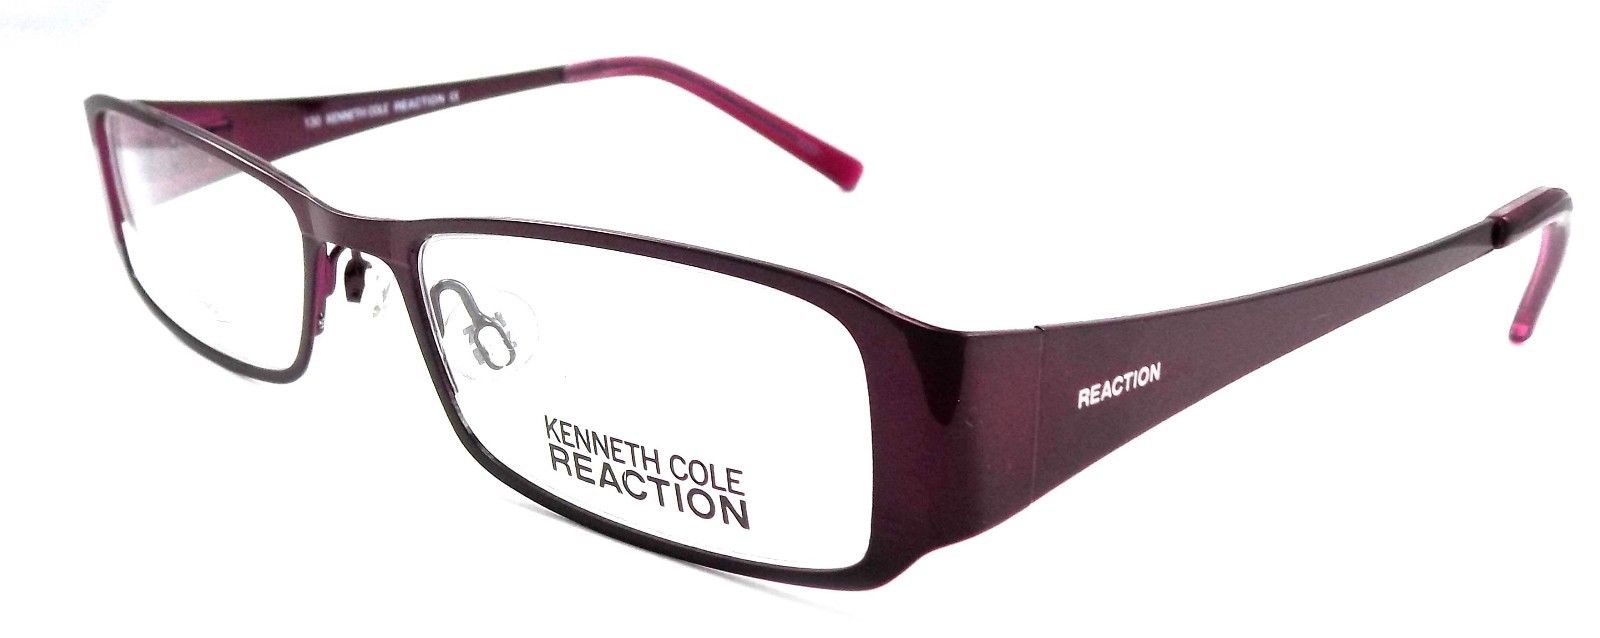 1-Kenneth Cole REACTION KC0717 082 Women's Eyeglasses 49-17-130 Violet + Case-726773164588-IKSpecs